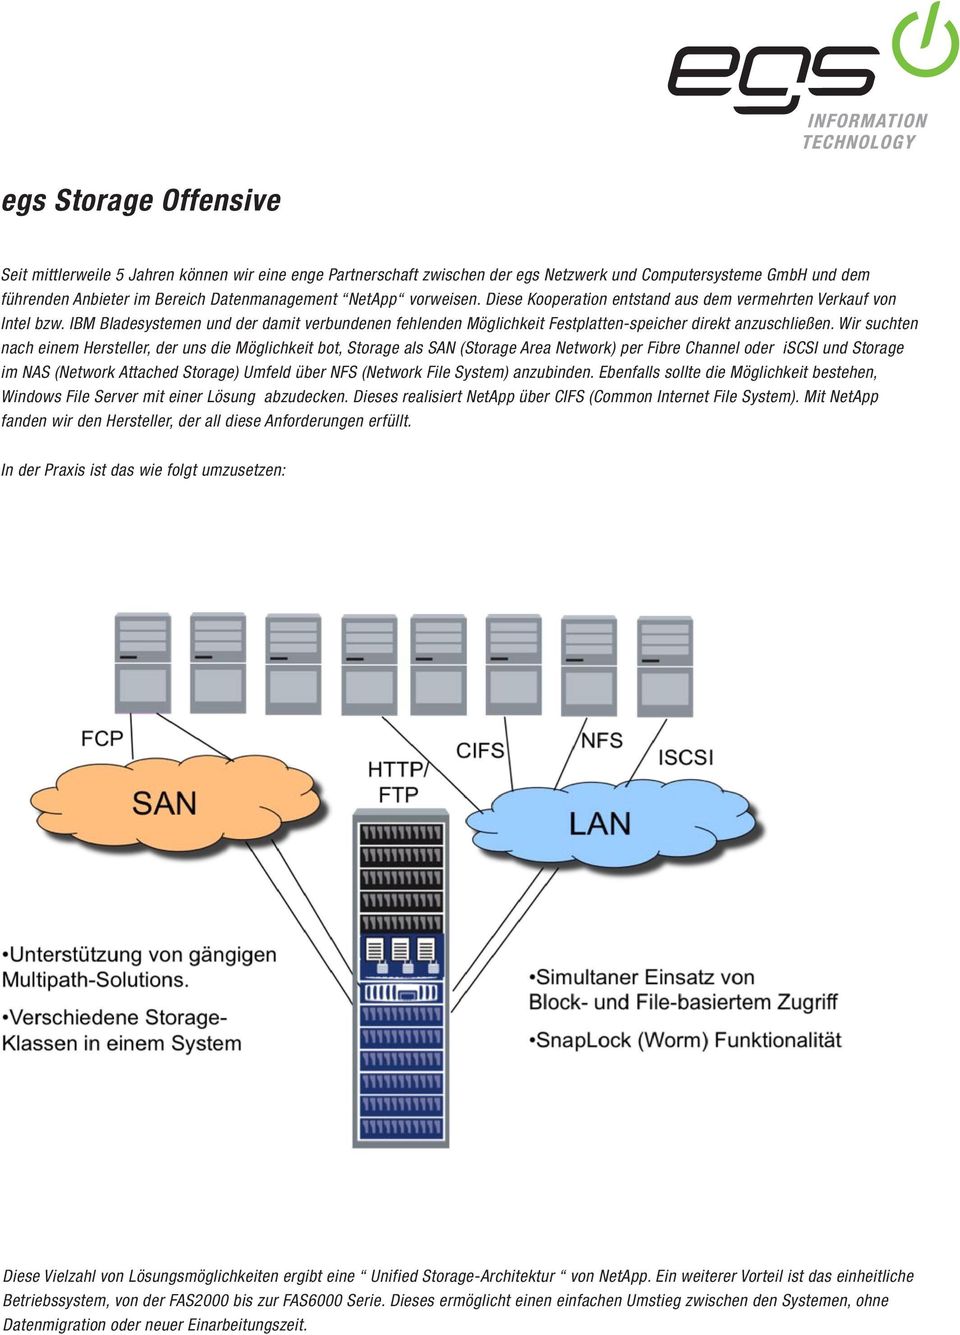 Wir suchten nach einem Hersteller, der uns die Möglichkeit bot, Storage als SAN (Storage Area Network) per Fibre Channel oder iscsi und Storage im NAS (Network Attached Storage) Umfeld über NFS